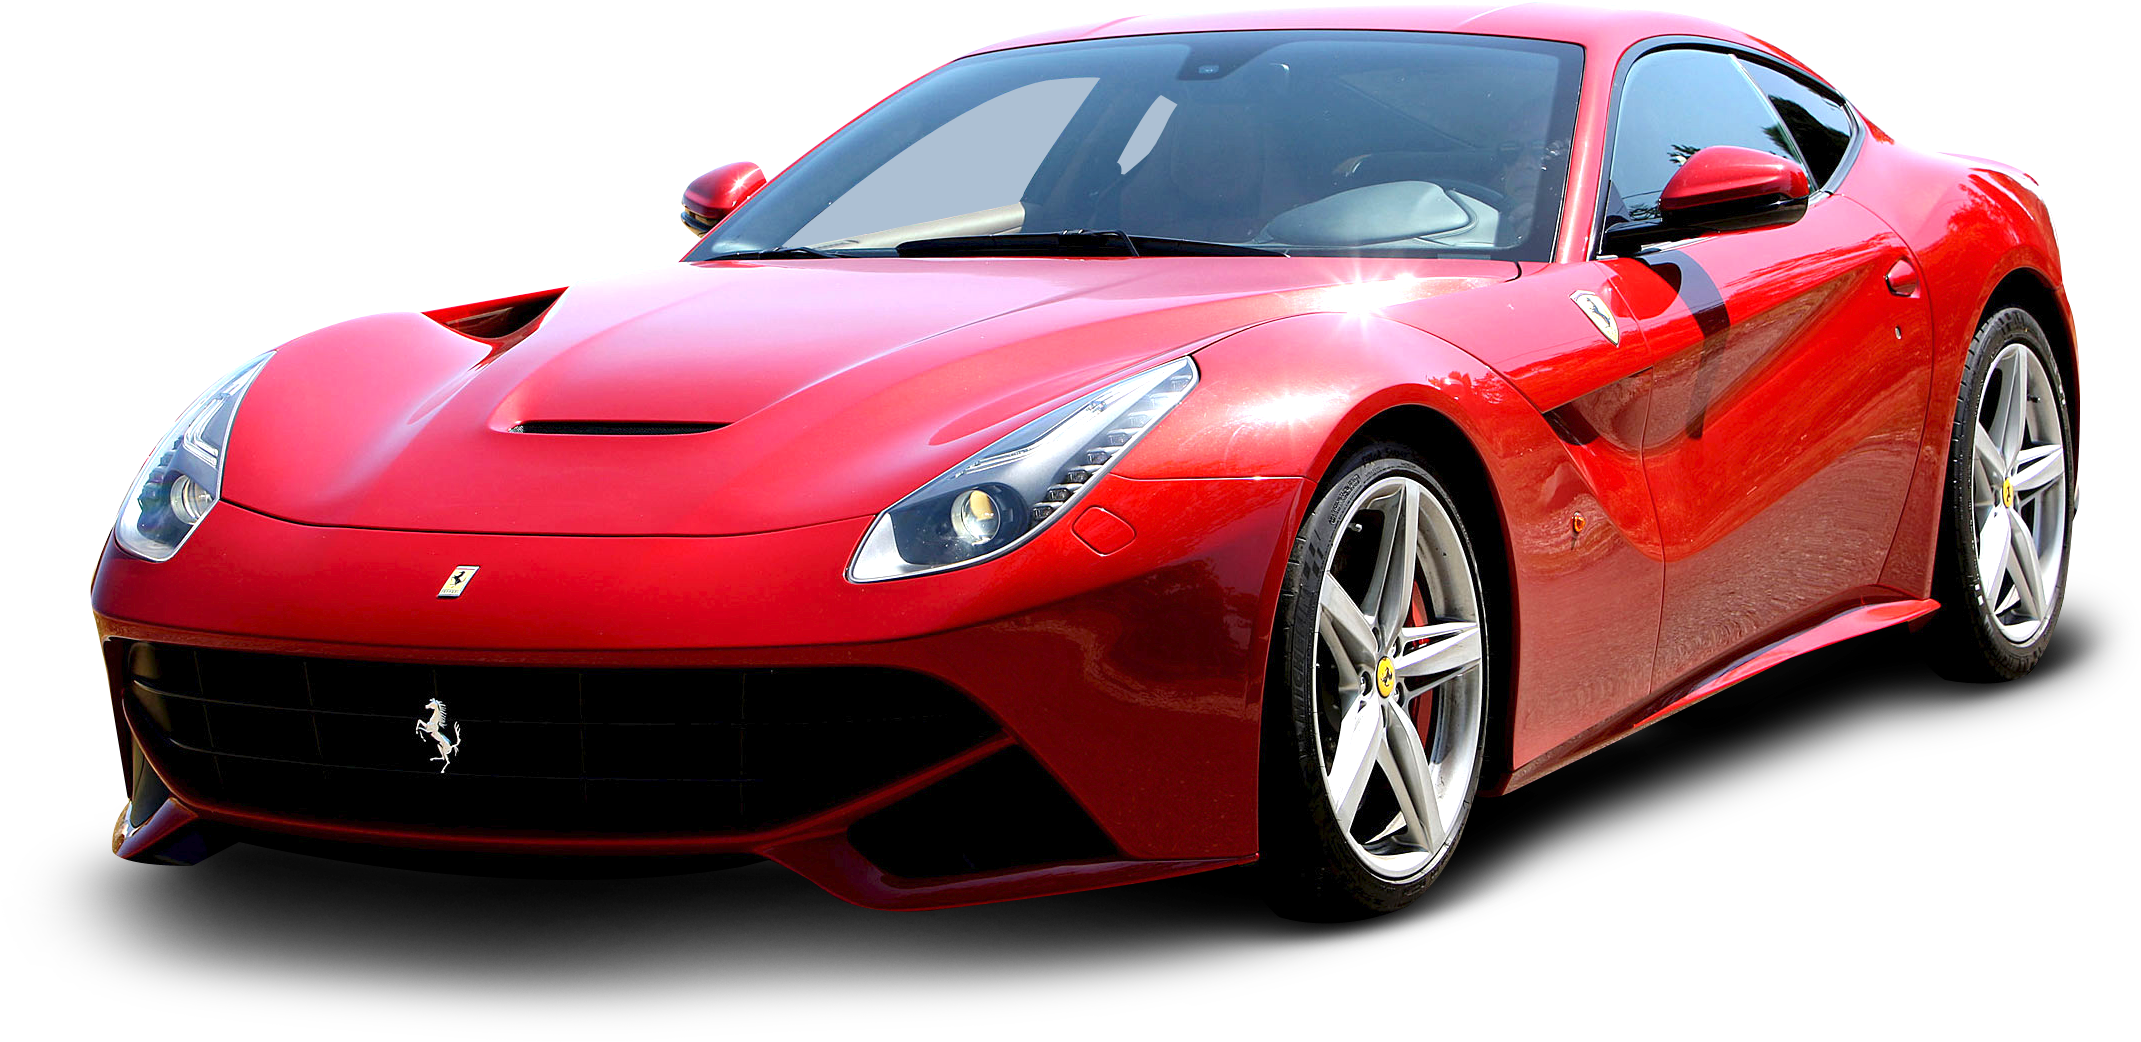 Red Ferrari F12 Berlinetta Car - Ferrari Berlinetta F12 2016 (2438x1358)